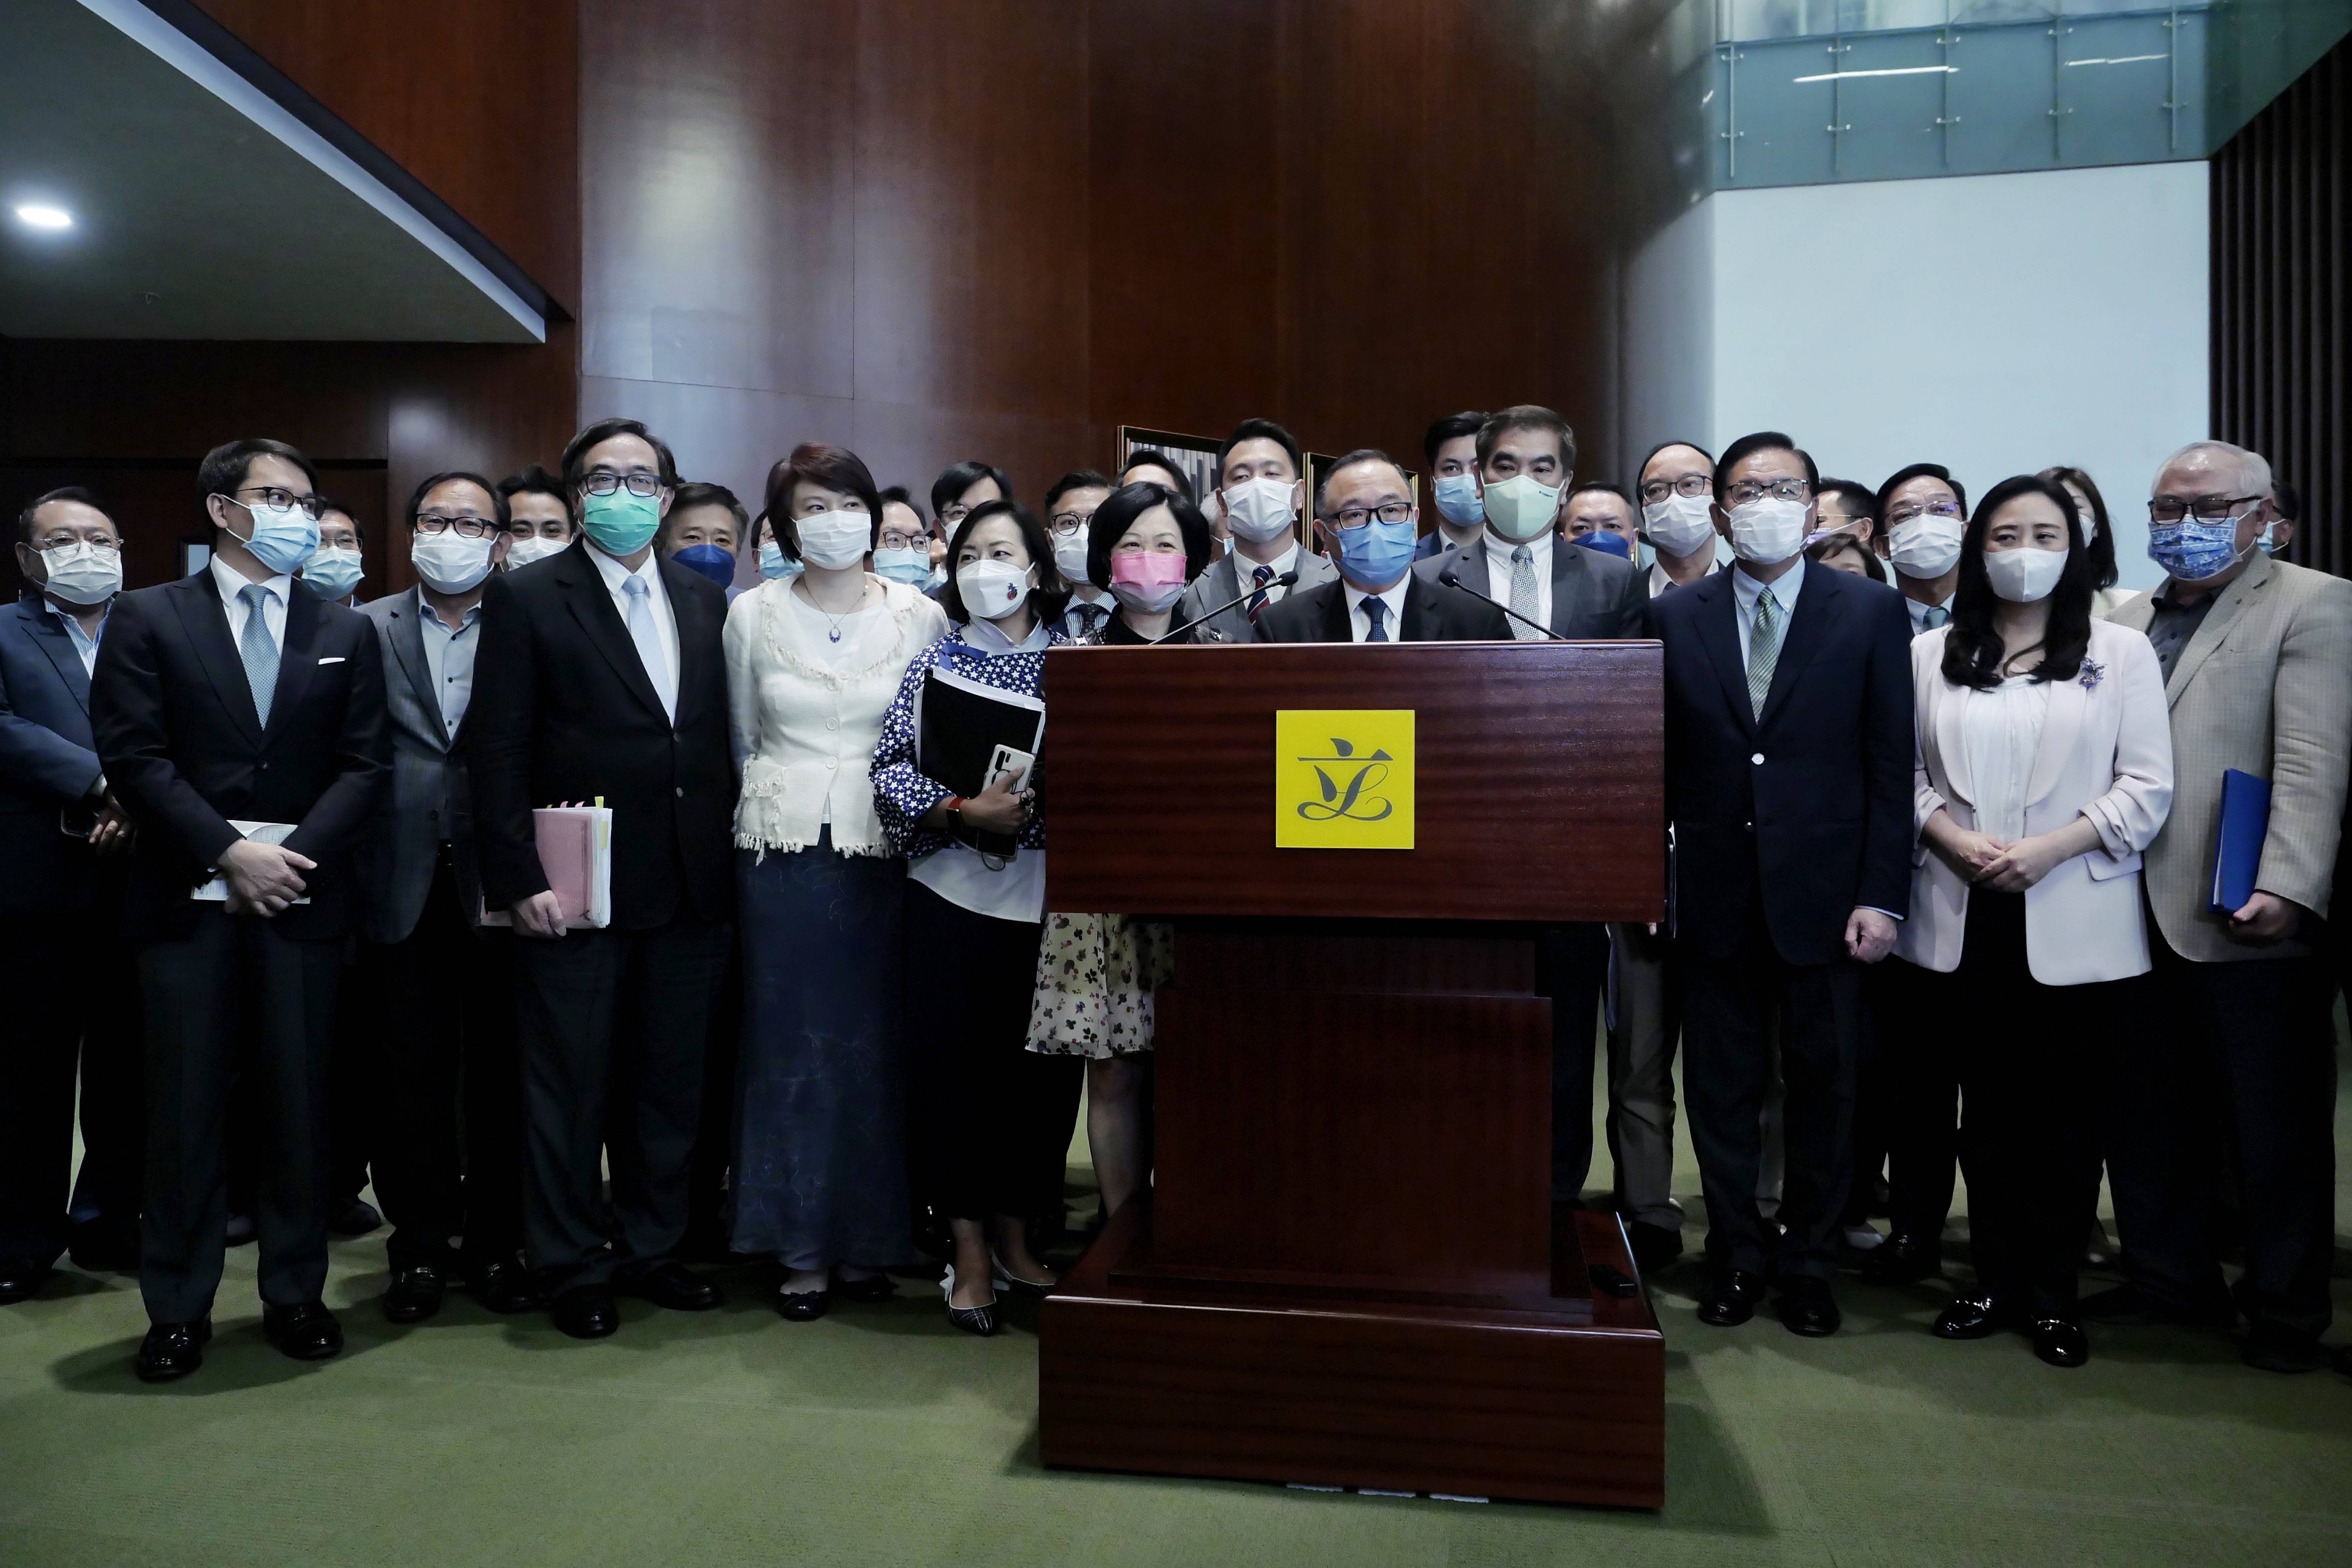 5月27日,在香港特区立法会,建制派议员集体接受记者采访